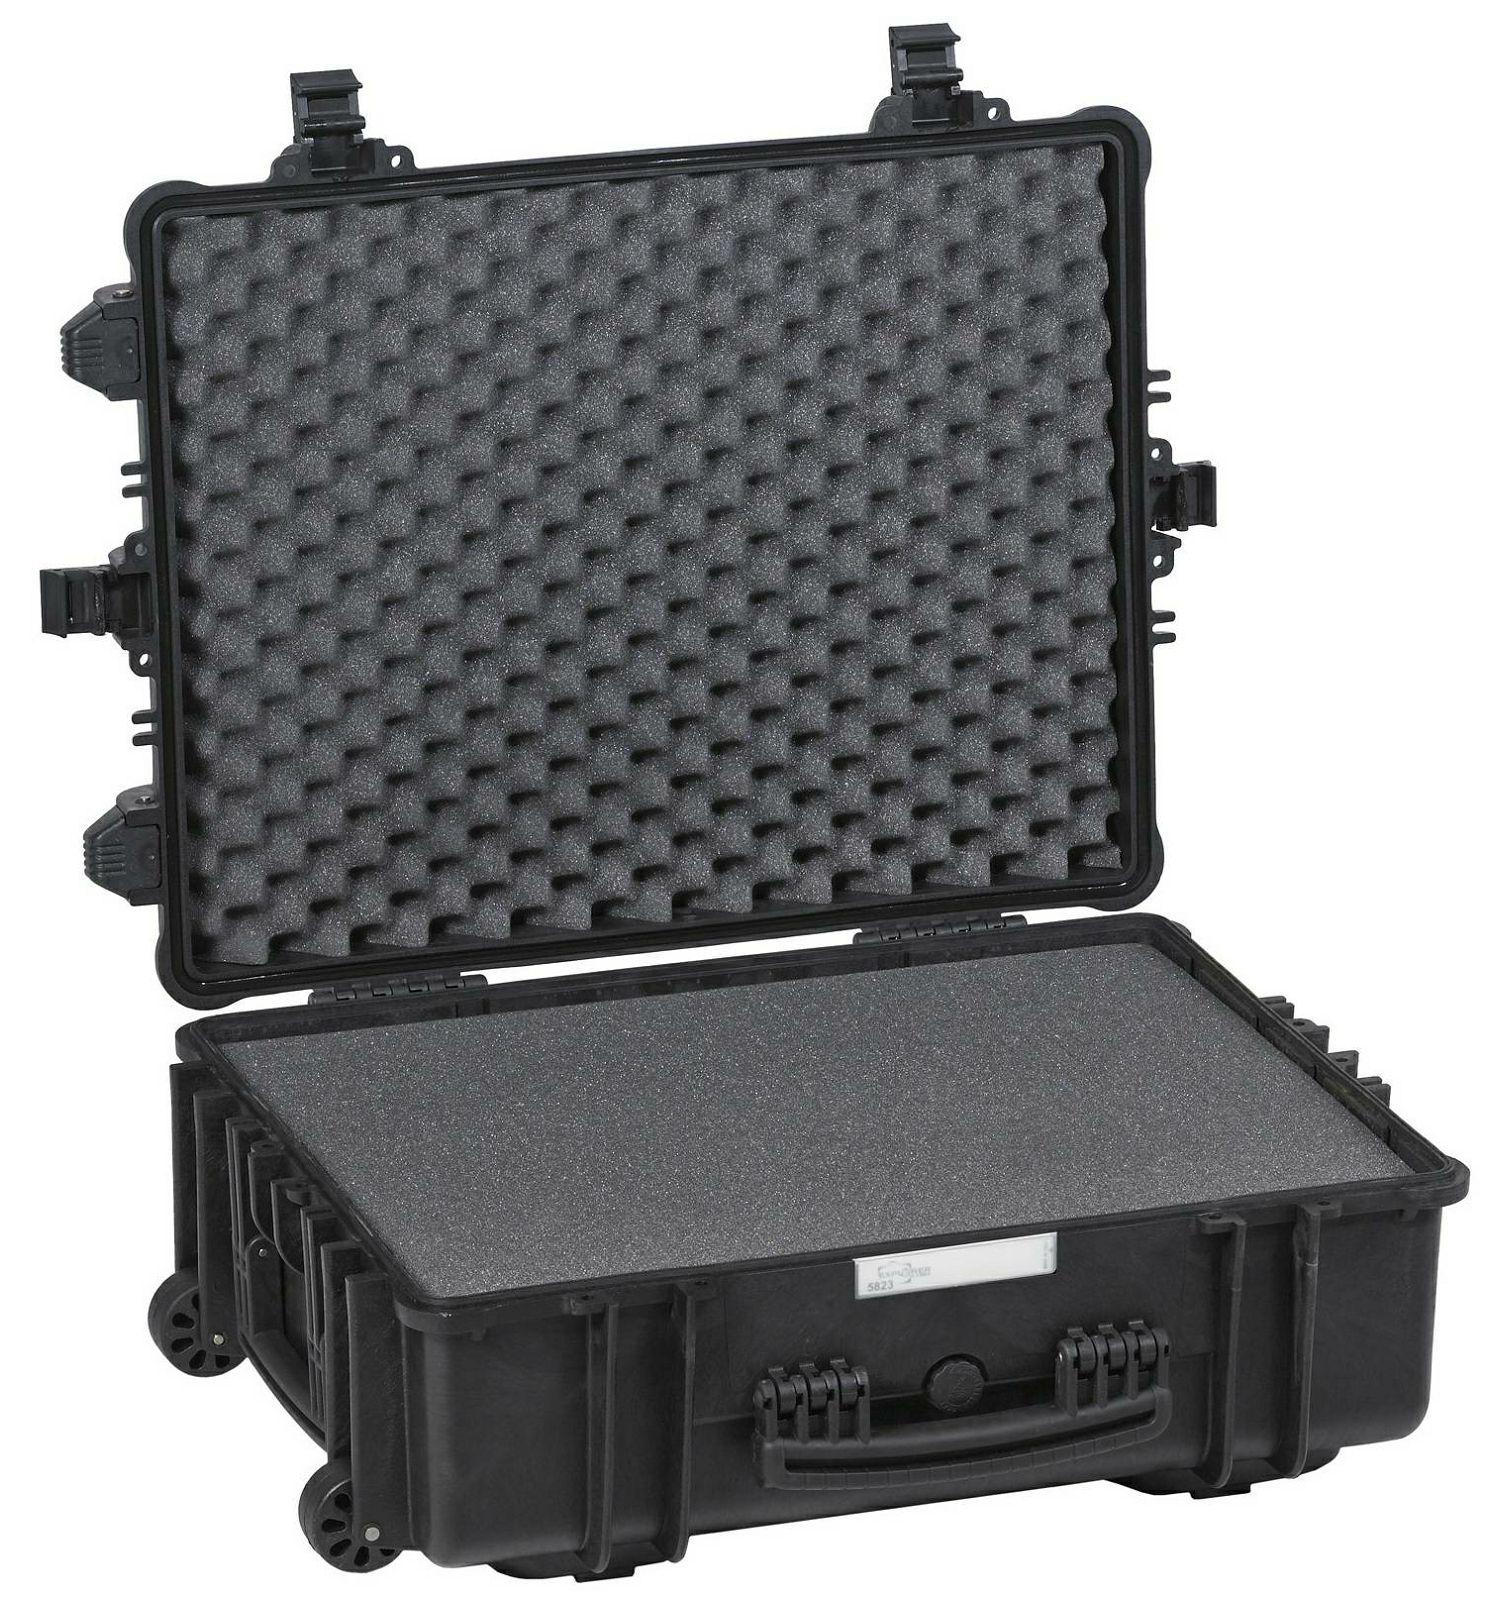 Explorer Cases 5823 Black Foam 670x510x262mm kufer za foto opremu kofer Camera Case